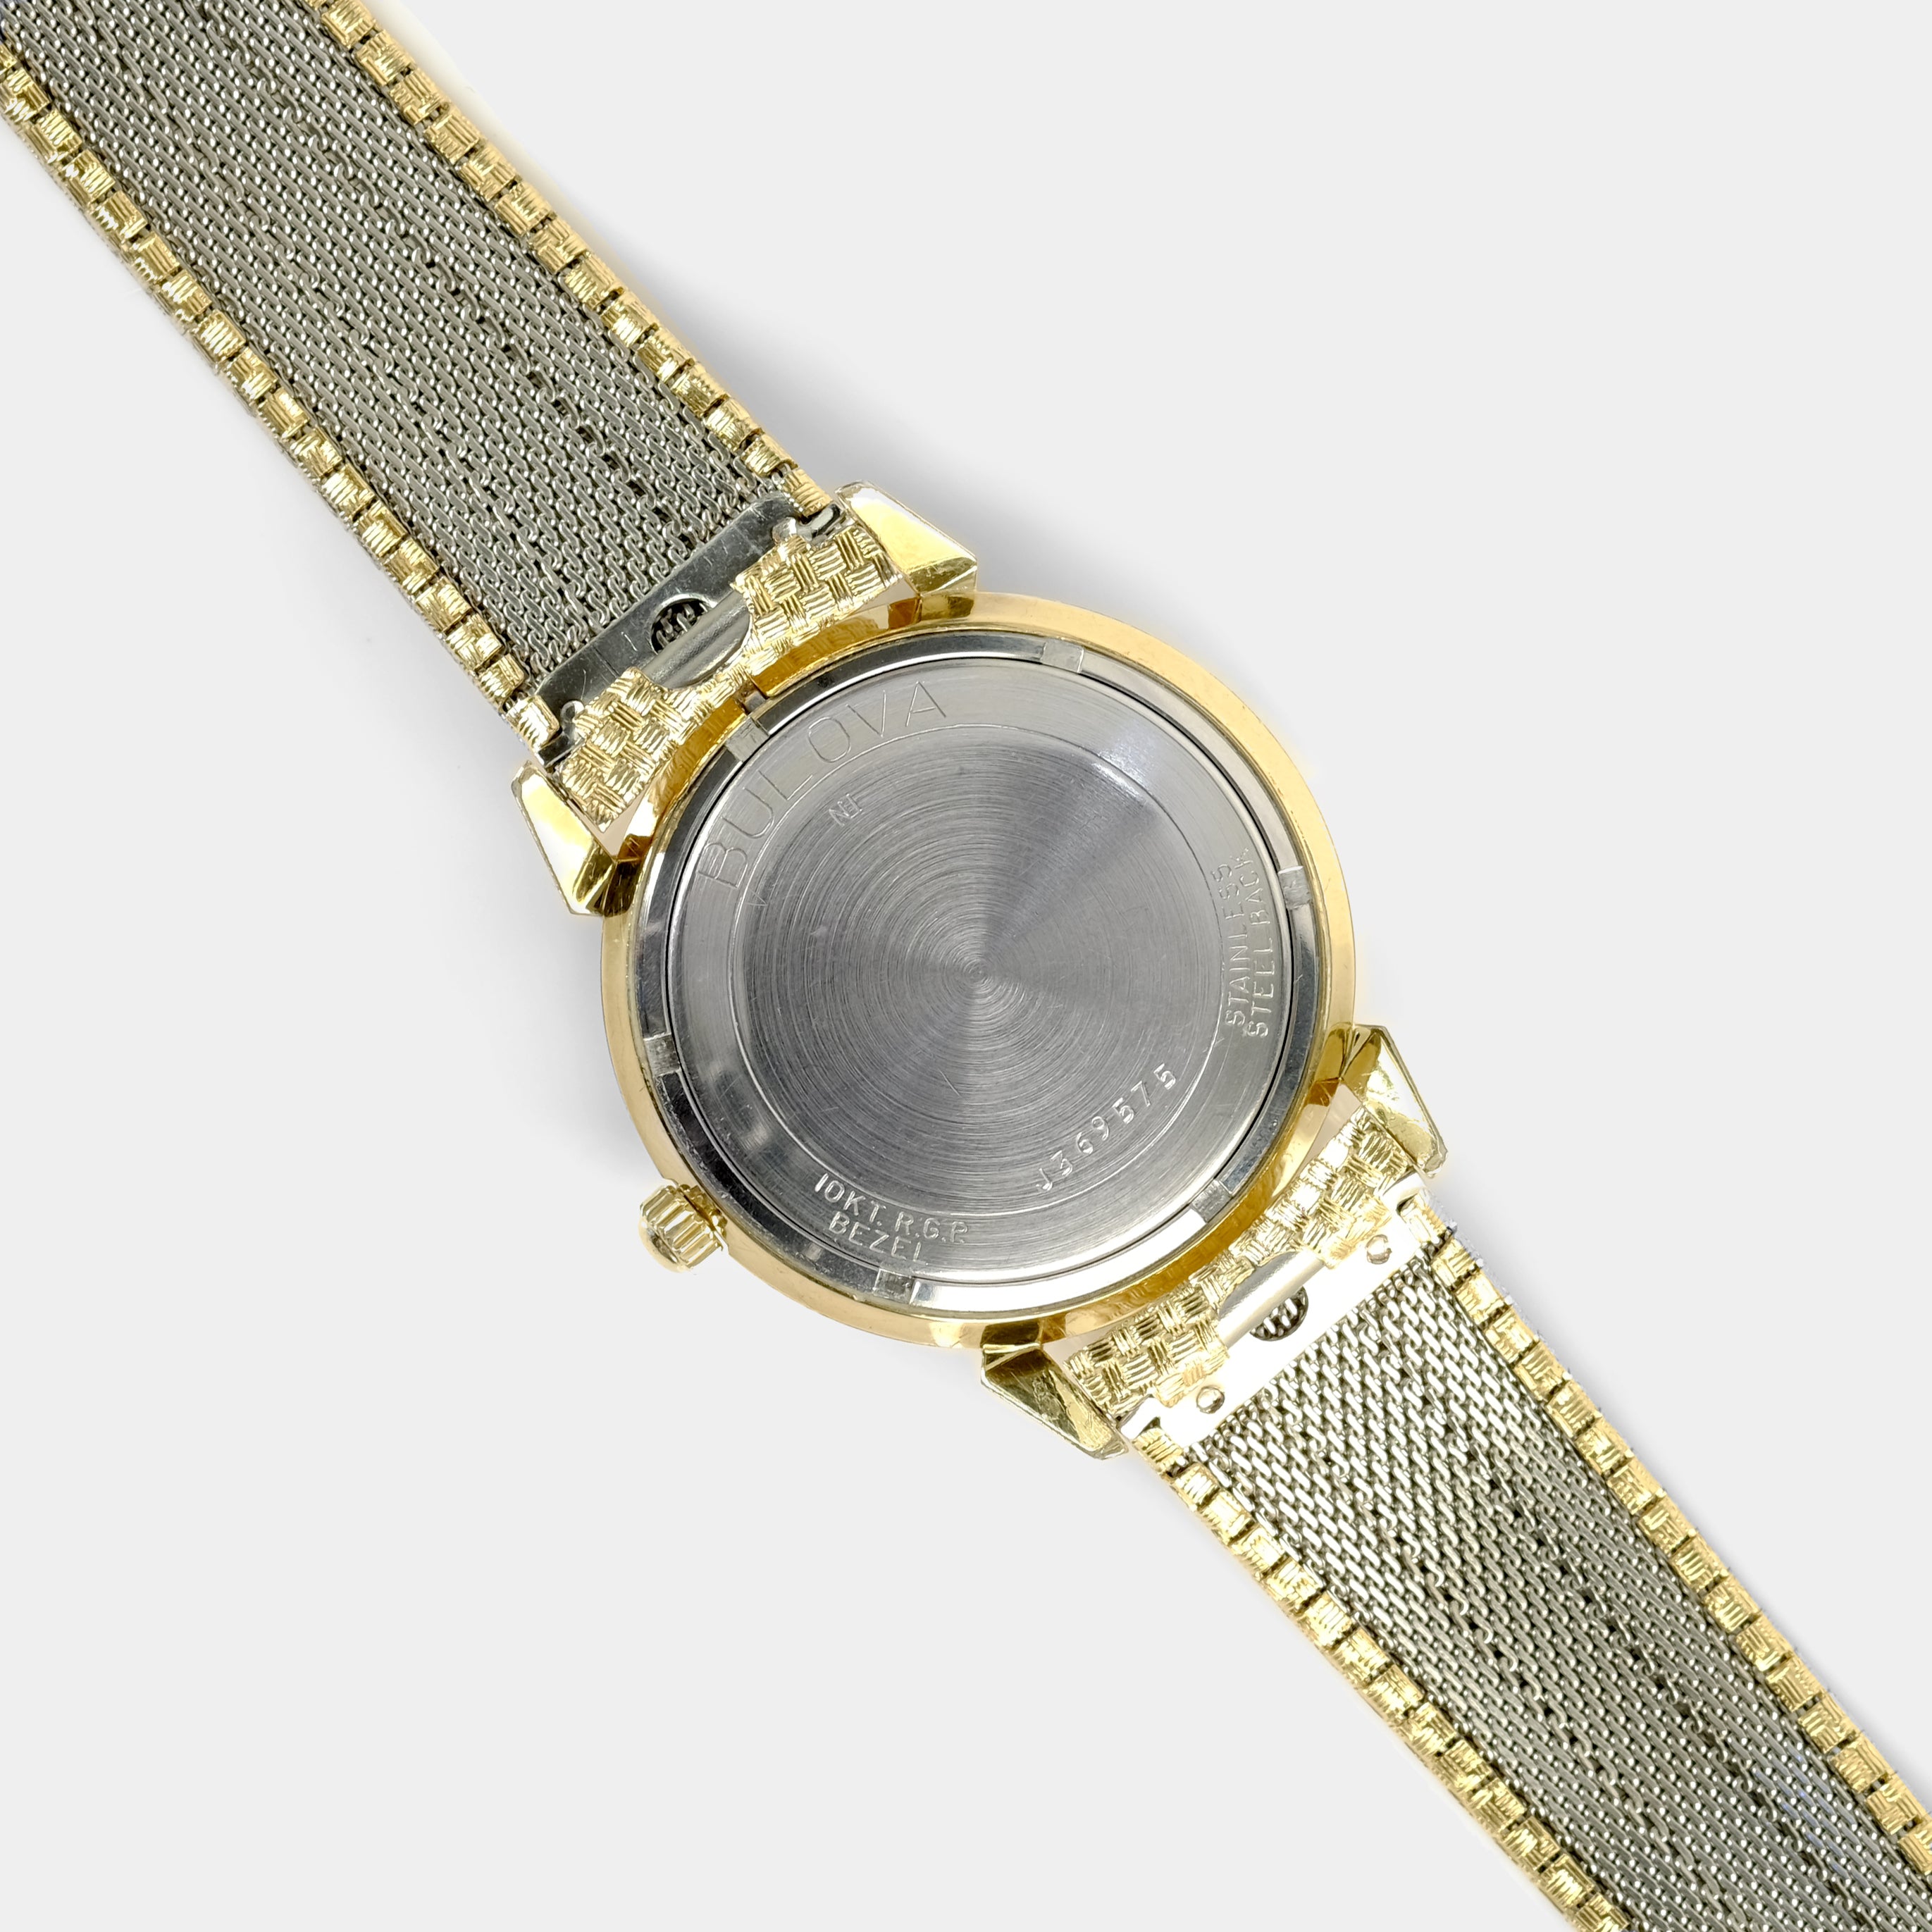 Bulova Date King Automatic Circa 1971 Wristwatch